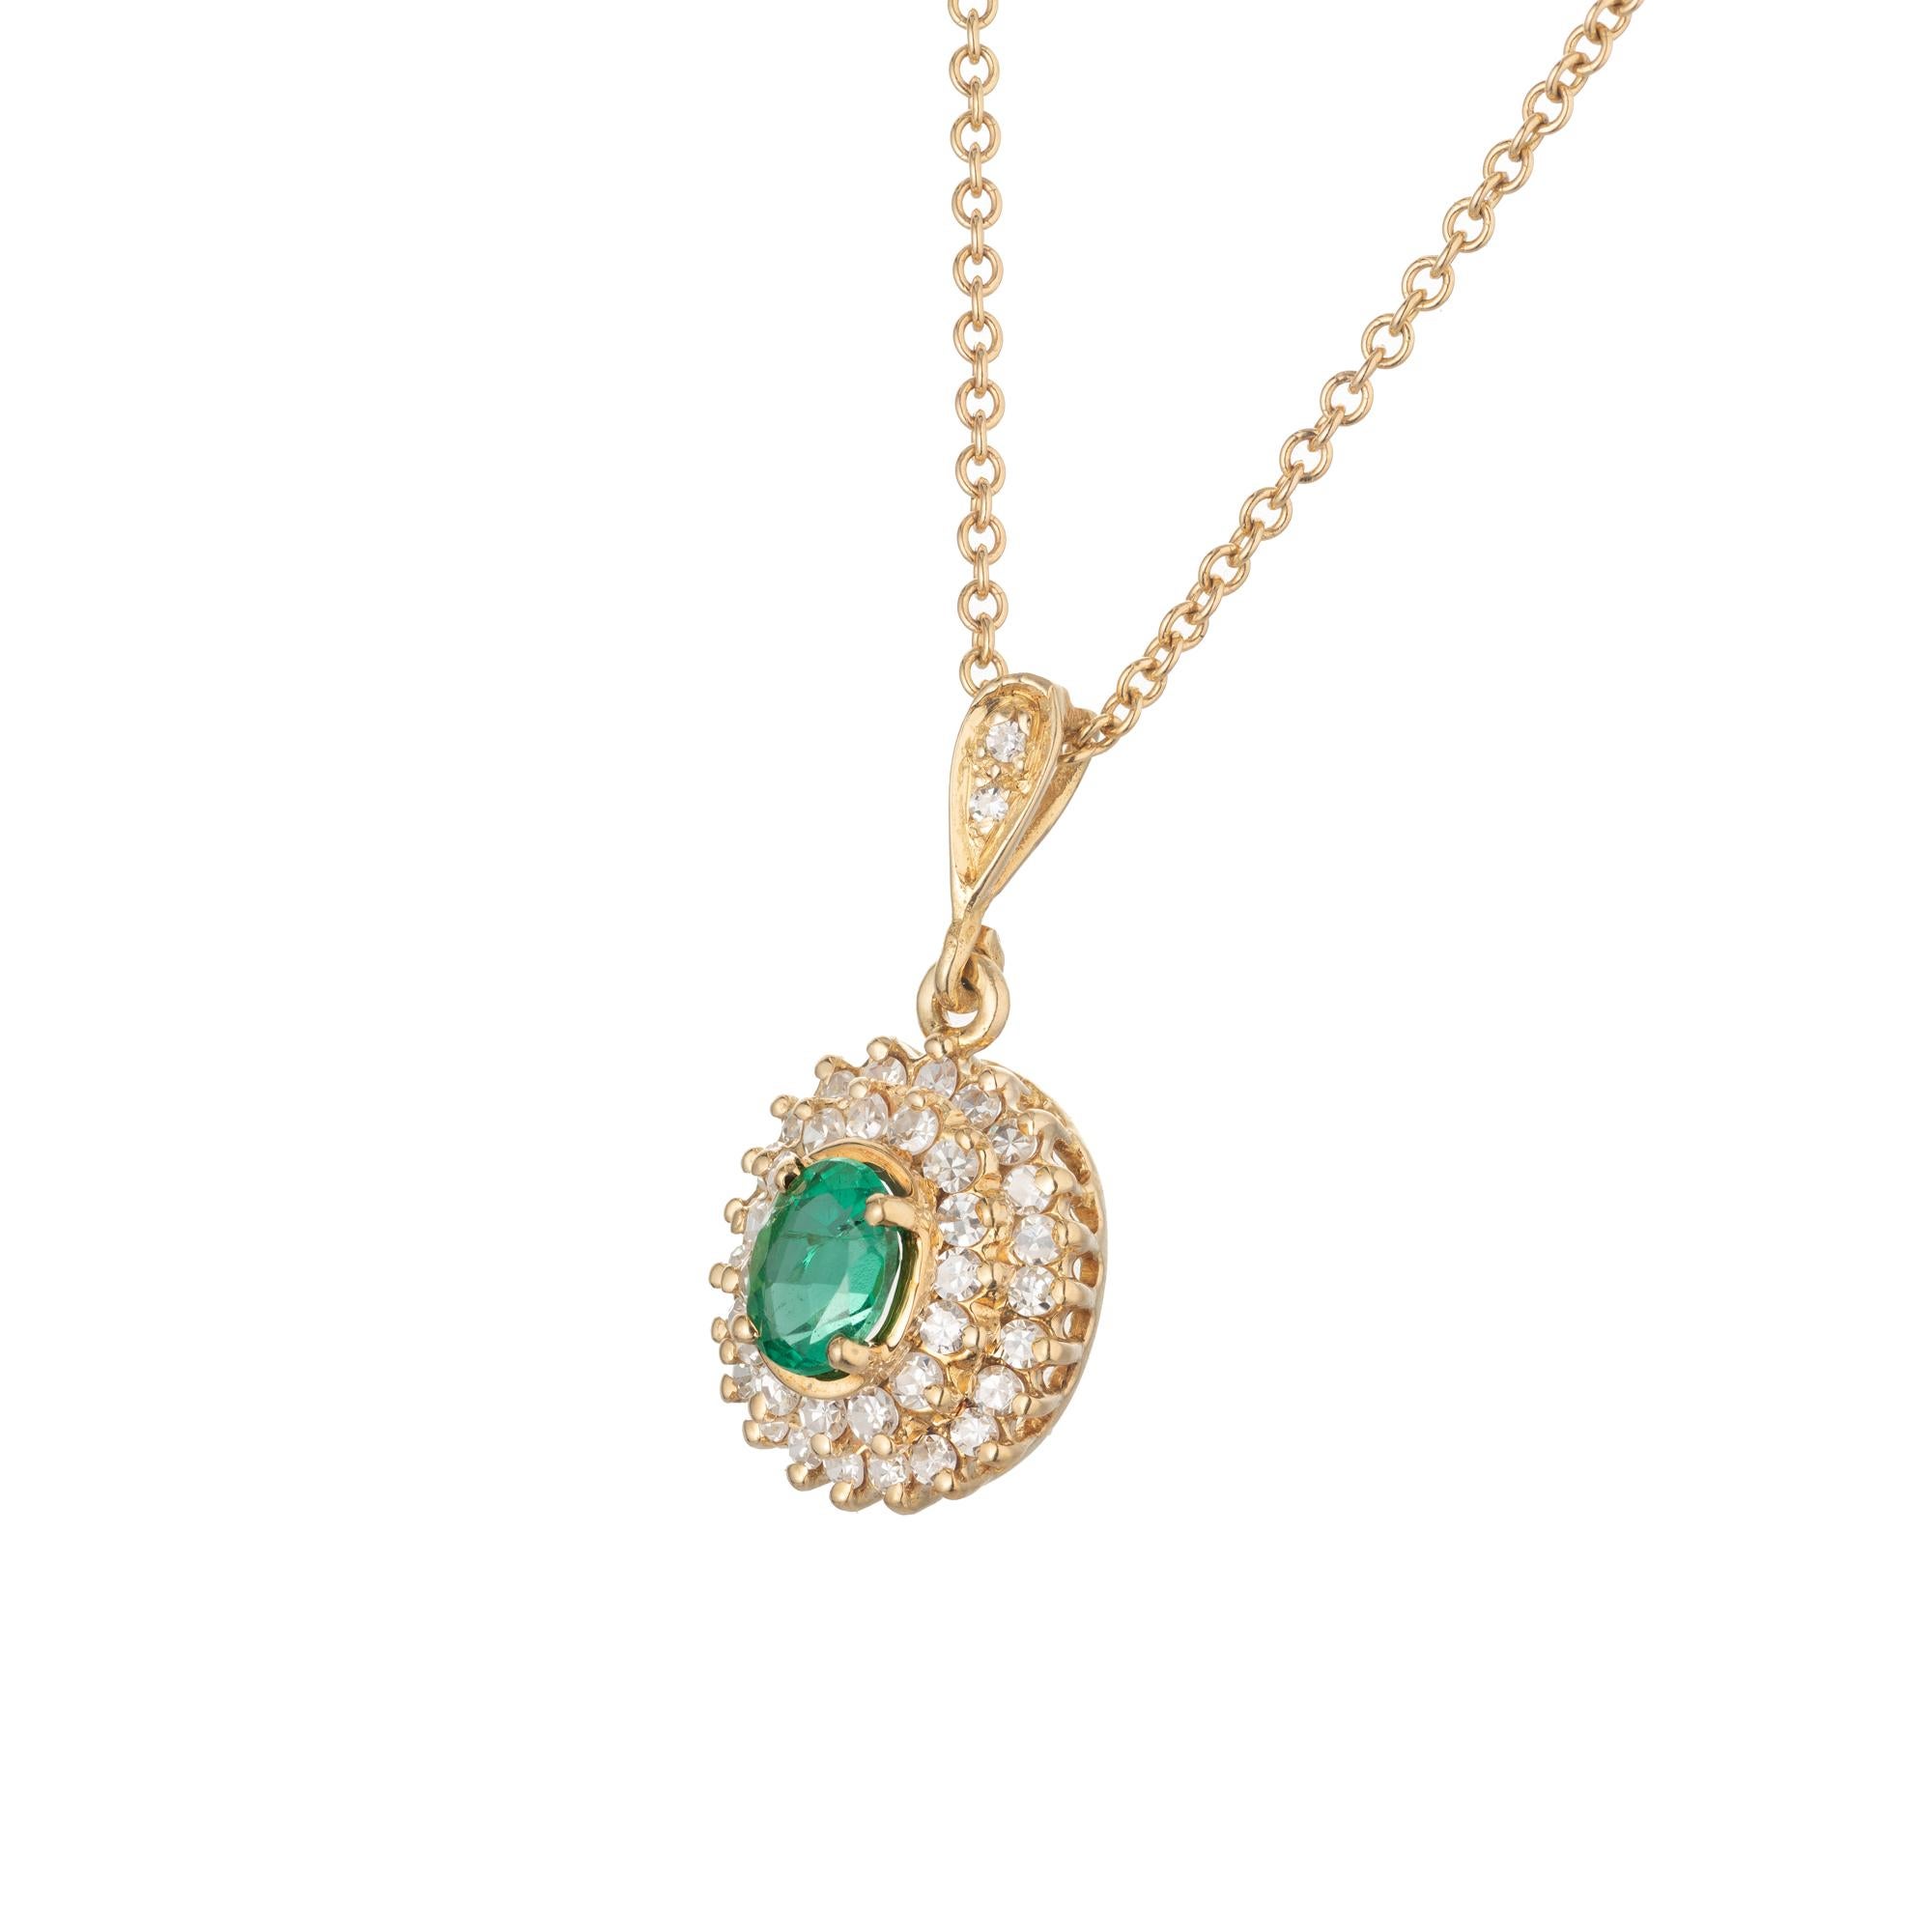 Smaragd-Diamant-Anhänger-Halskette um 1950-1960 mit einem hellgrünen GIA-zertifizierten natürlichen Smaragd in der Mitte und einem zweireihigen Halo aus runden Diamanten in einem abgestuften Design. 18k Gelbgold Kette. 18 Zoll. 

1 ovaler grüner